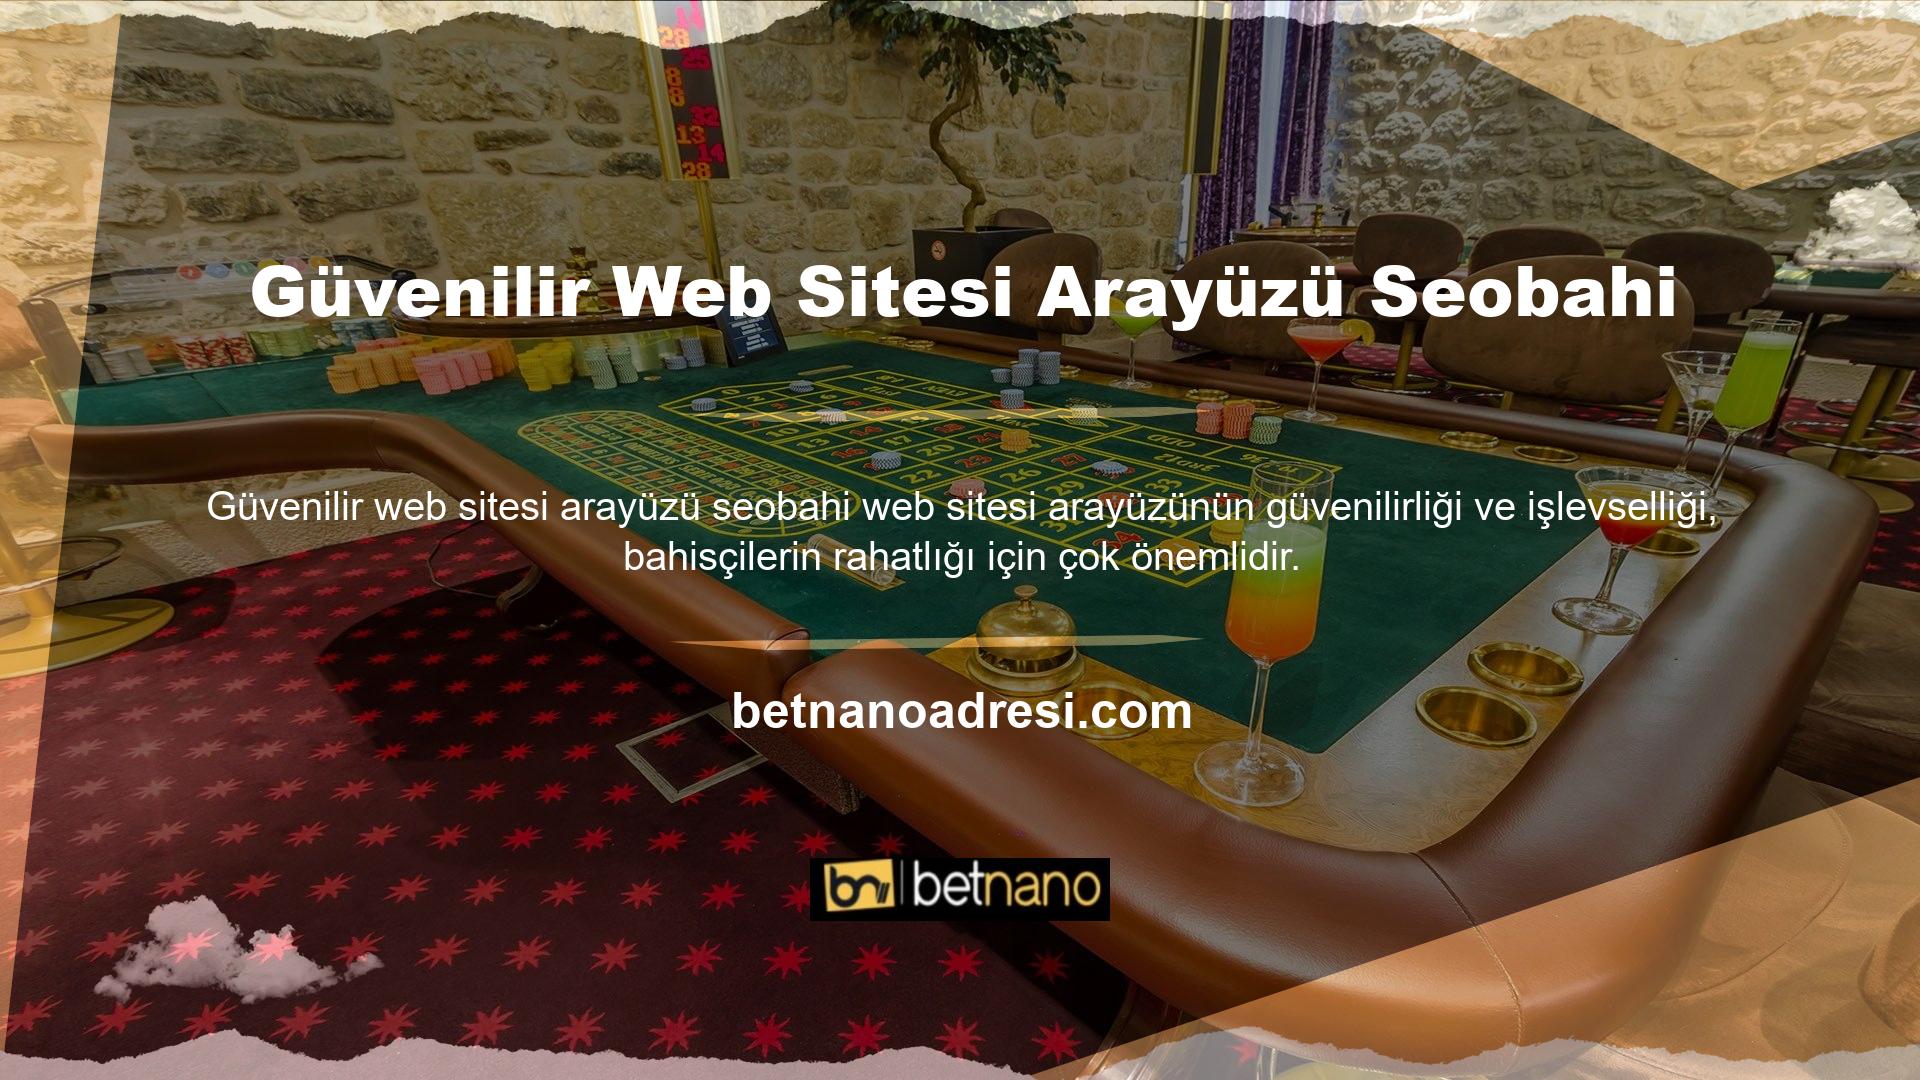 Diğer temalar gibi Betnano de web sitesi arayüzünde gelişmiş bir altyapı sistemi kullanır